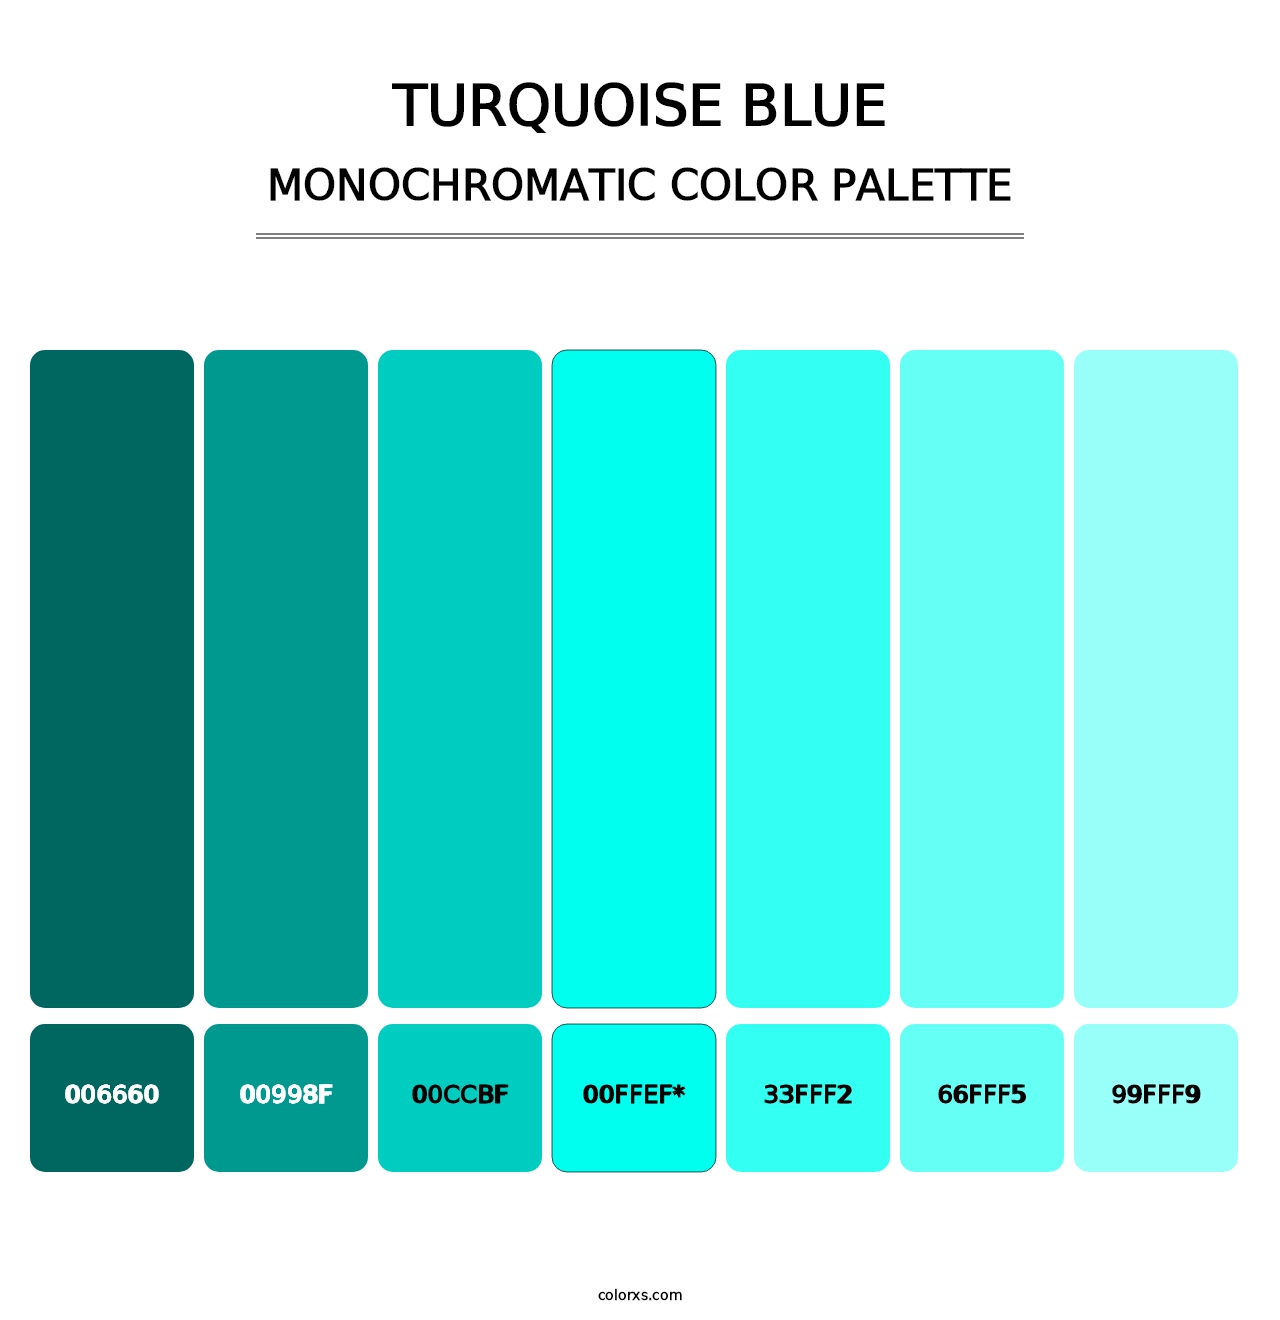 Turquoise Blue - Monochromatic Color Palette